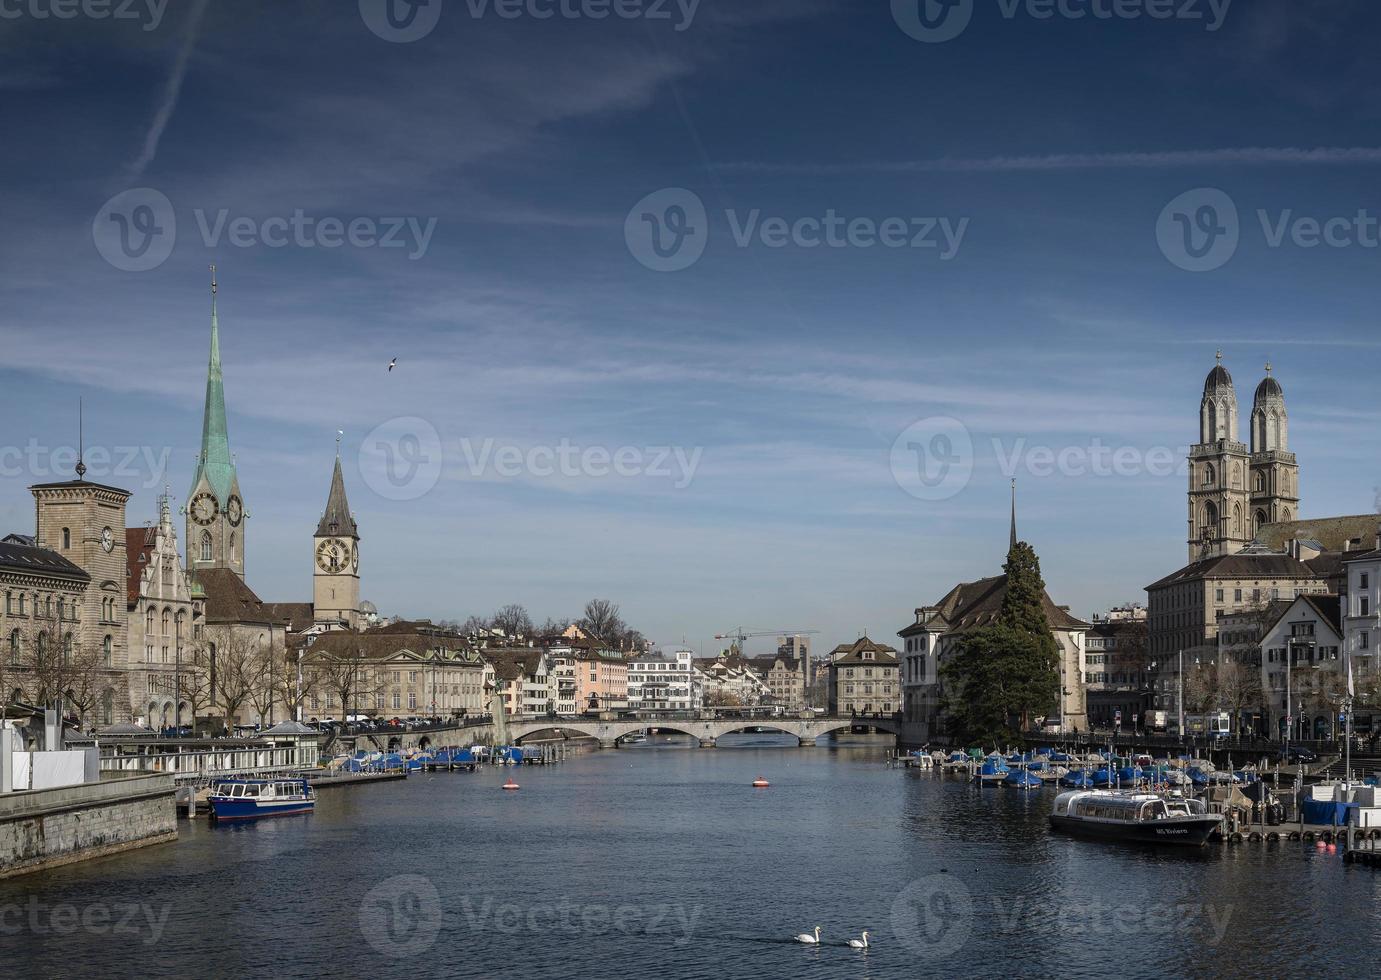 Zurigo centrale città vecchia e vista del punto di riferimento del fiume Limmat in svizzera foto